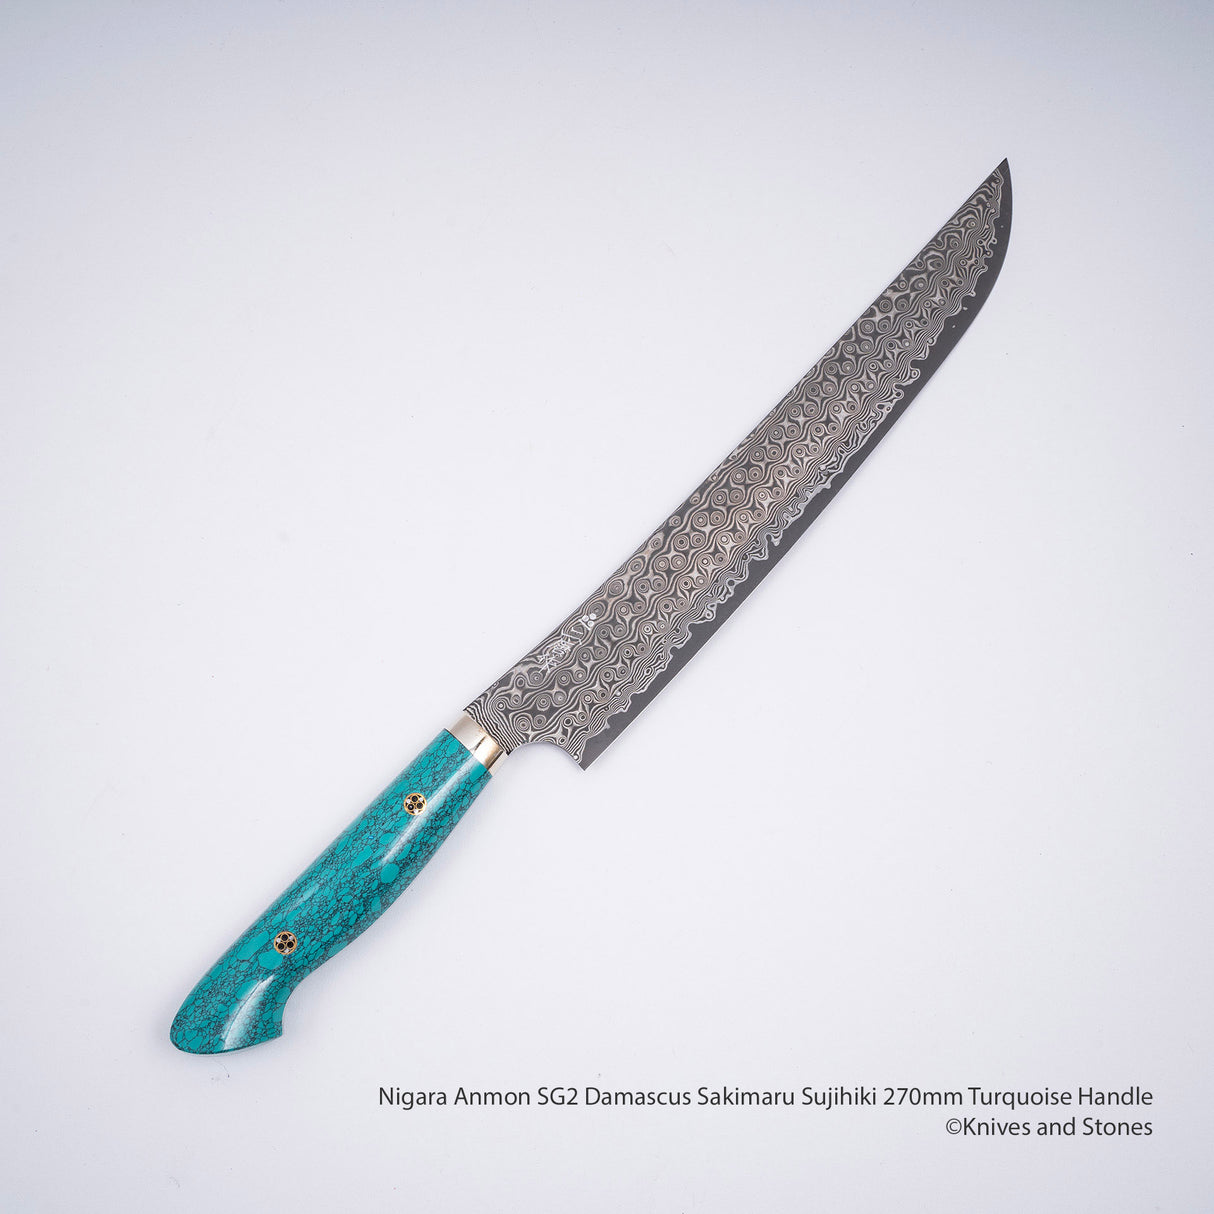 Nigara Anmon SG2 Damascus Sakimaru Sujihiki 270mm Turquoise Handle SP1